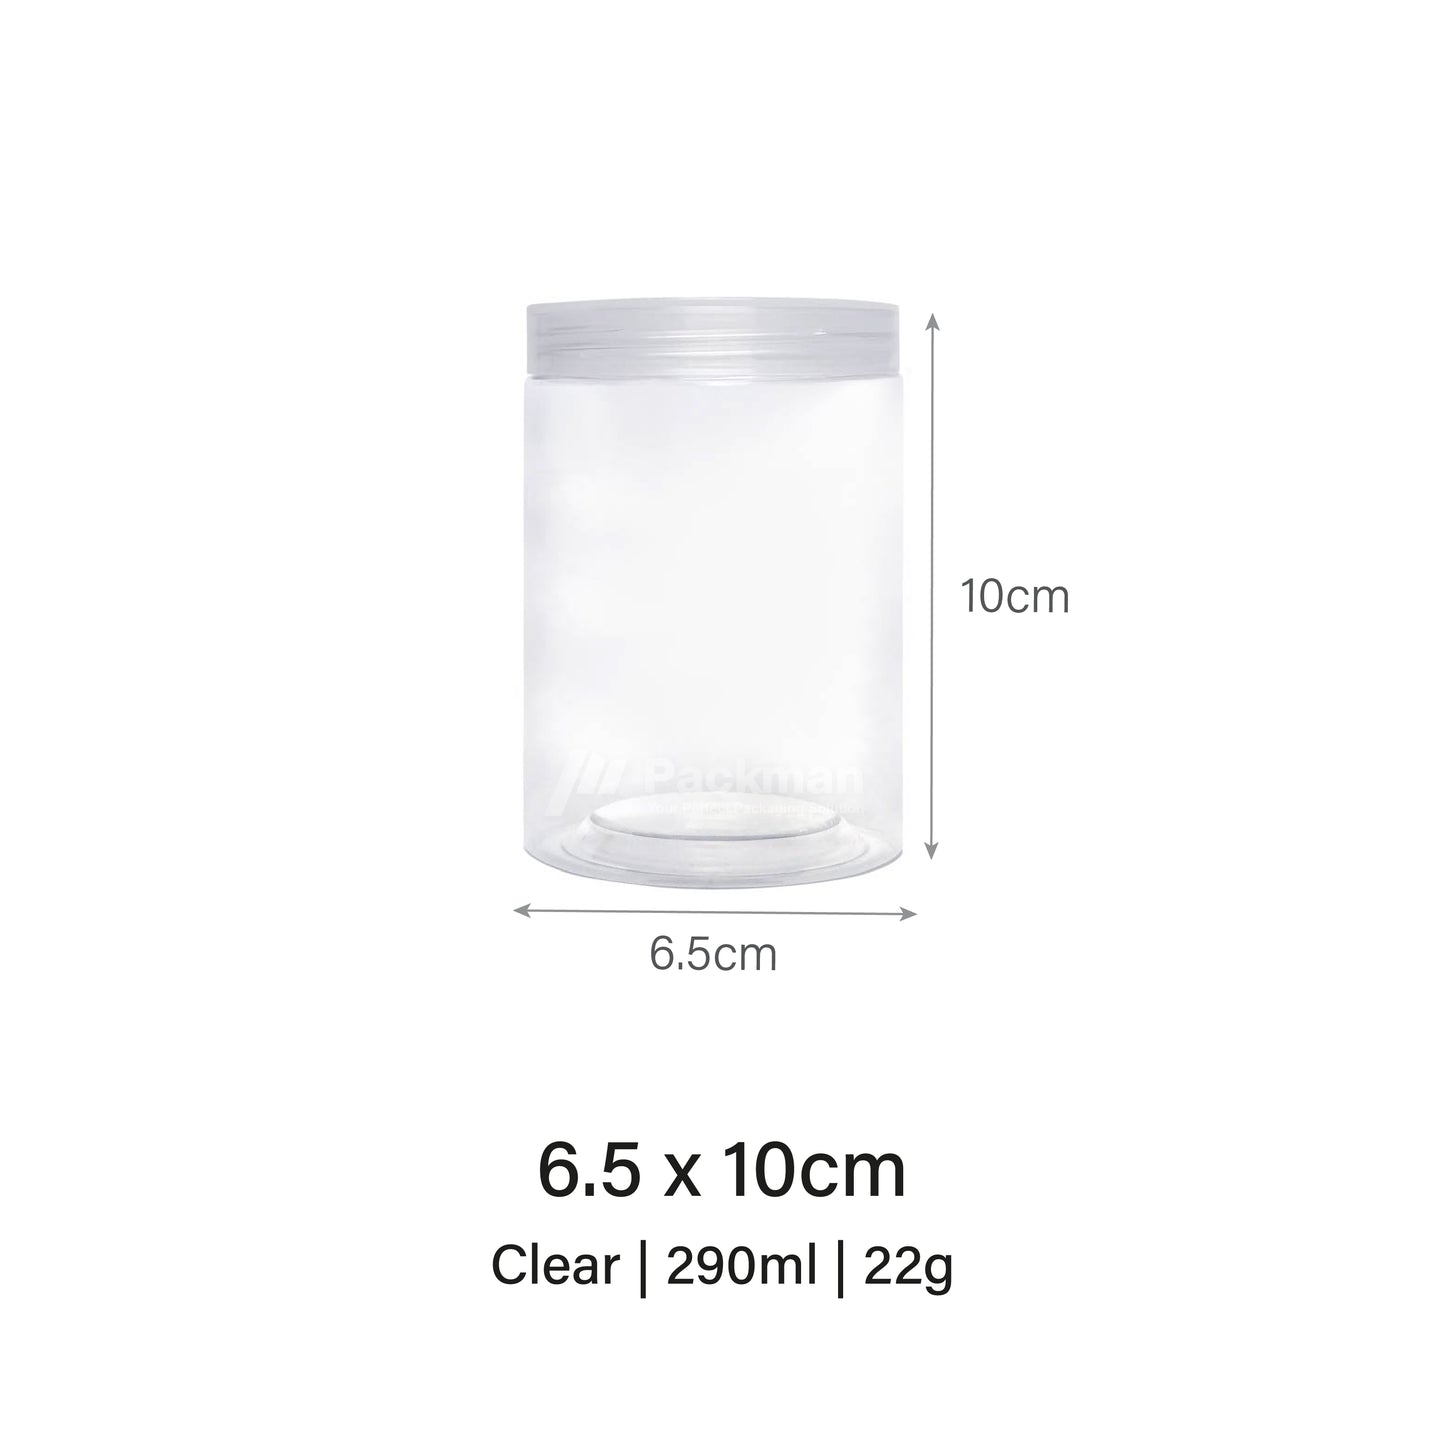 6.5 x 10cm Clear Plastic Jar (113pcs)